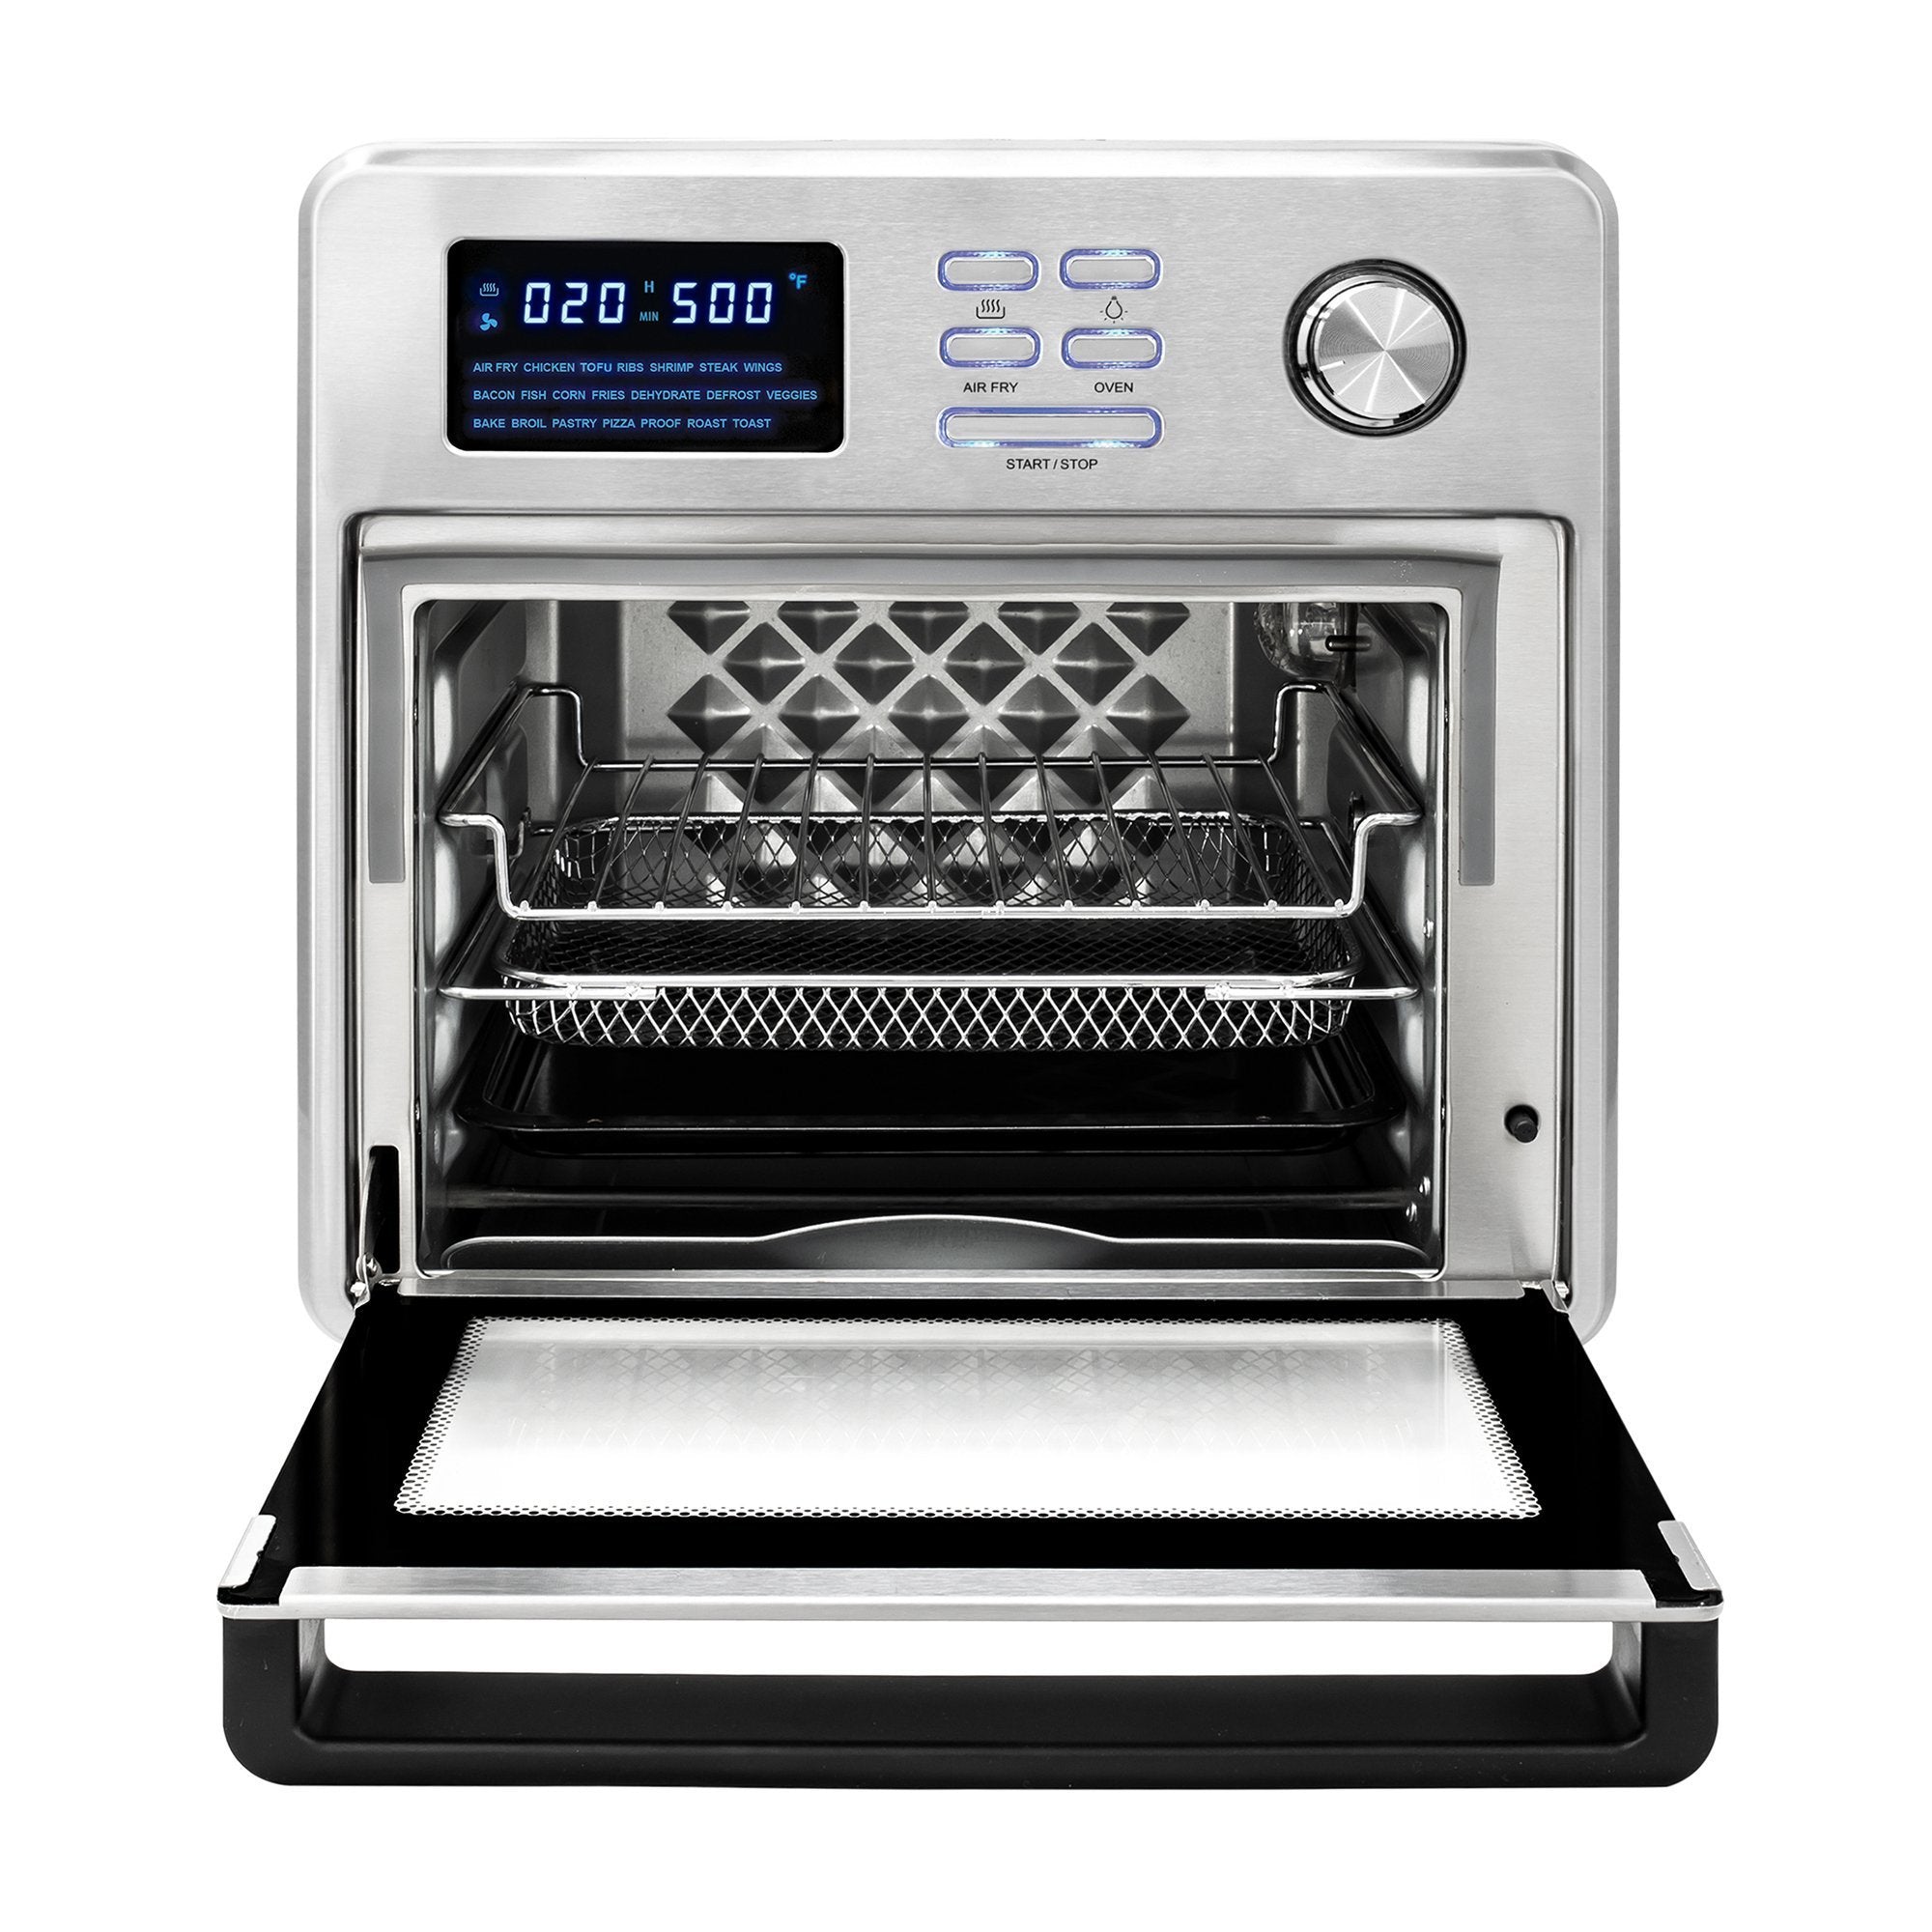 Kalorik MAXX 16 Quart Digital Air Fryer Oven